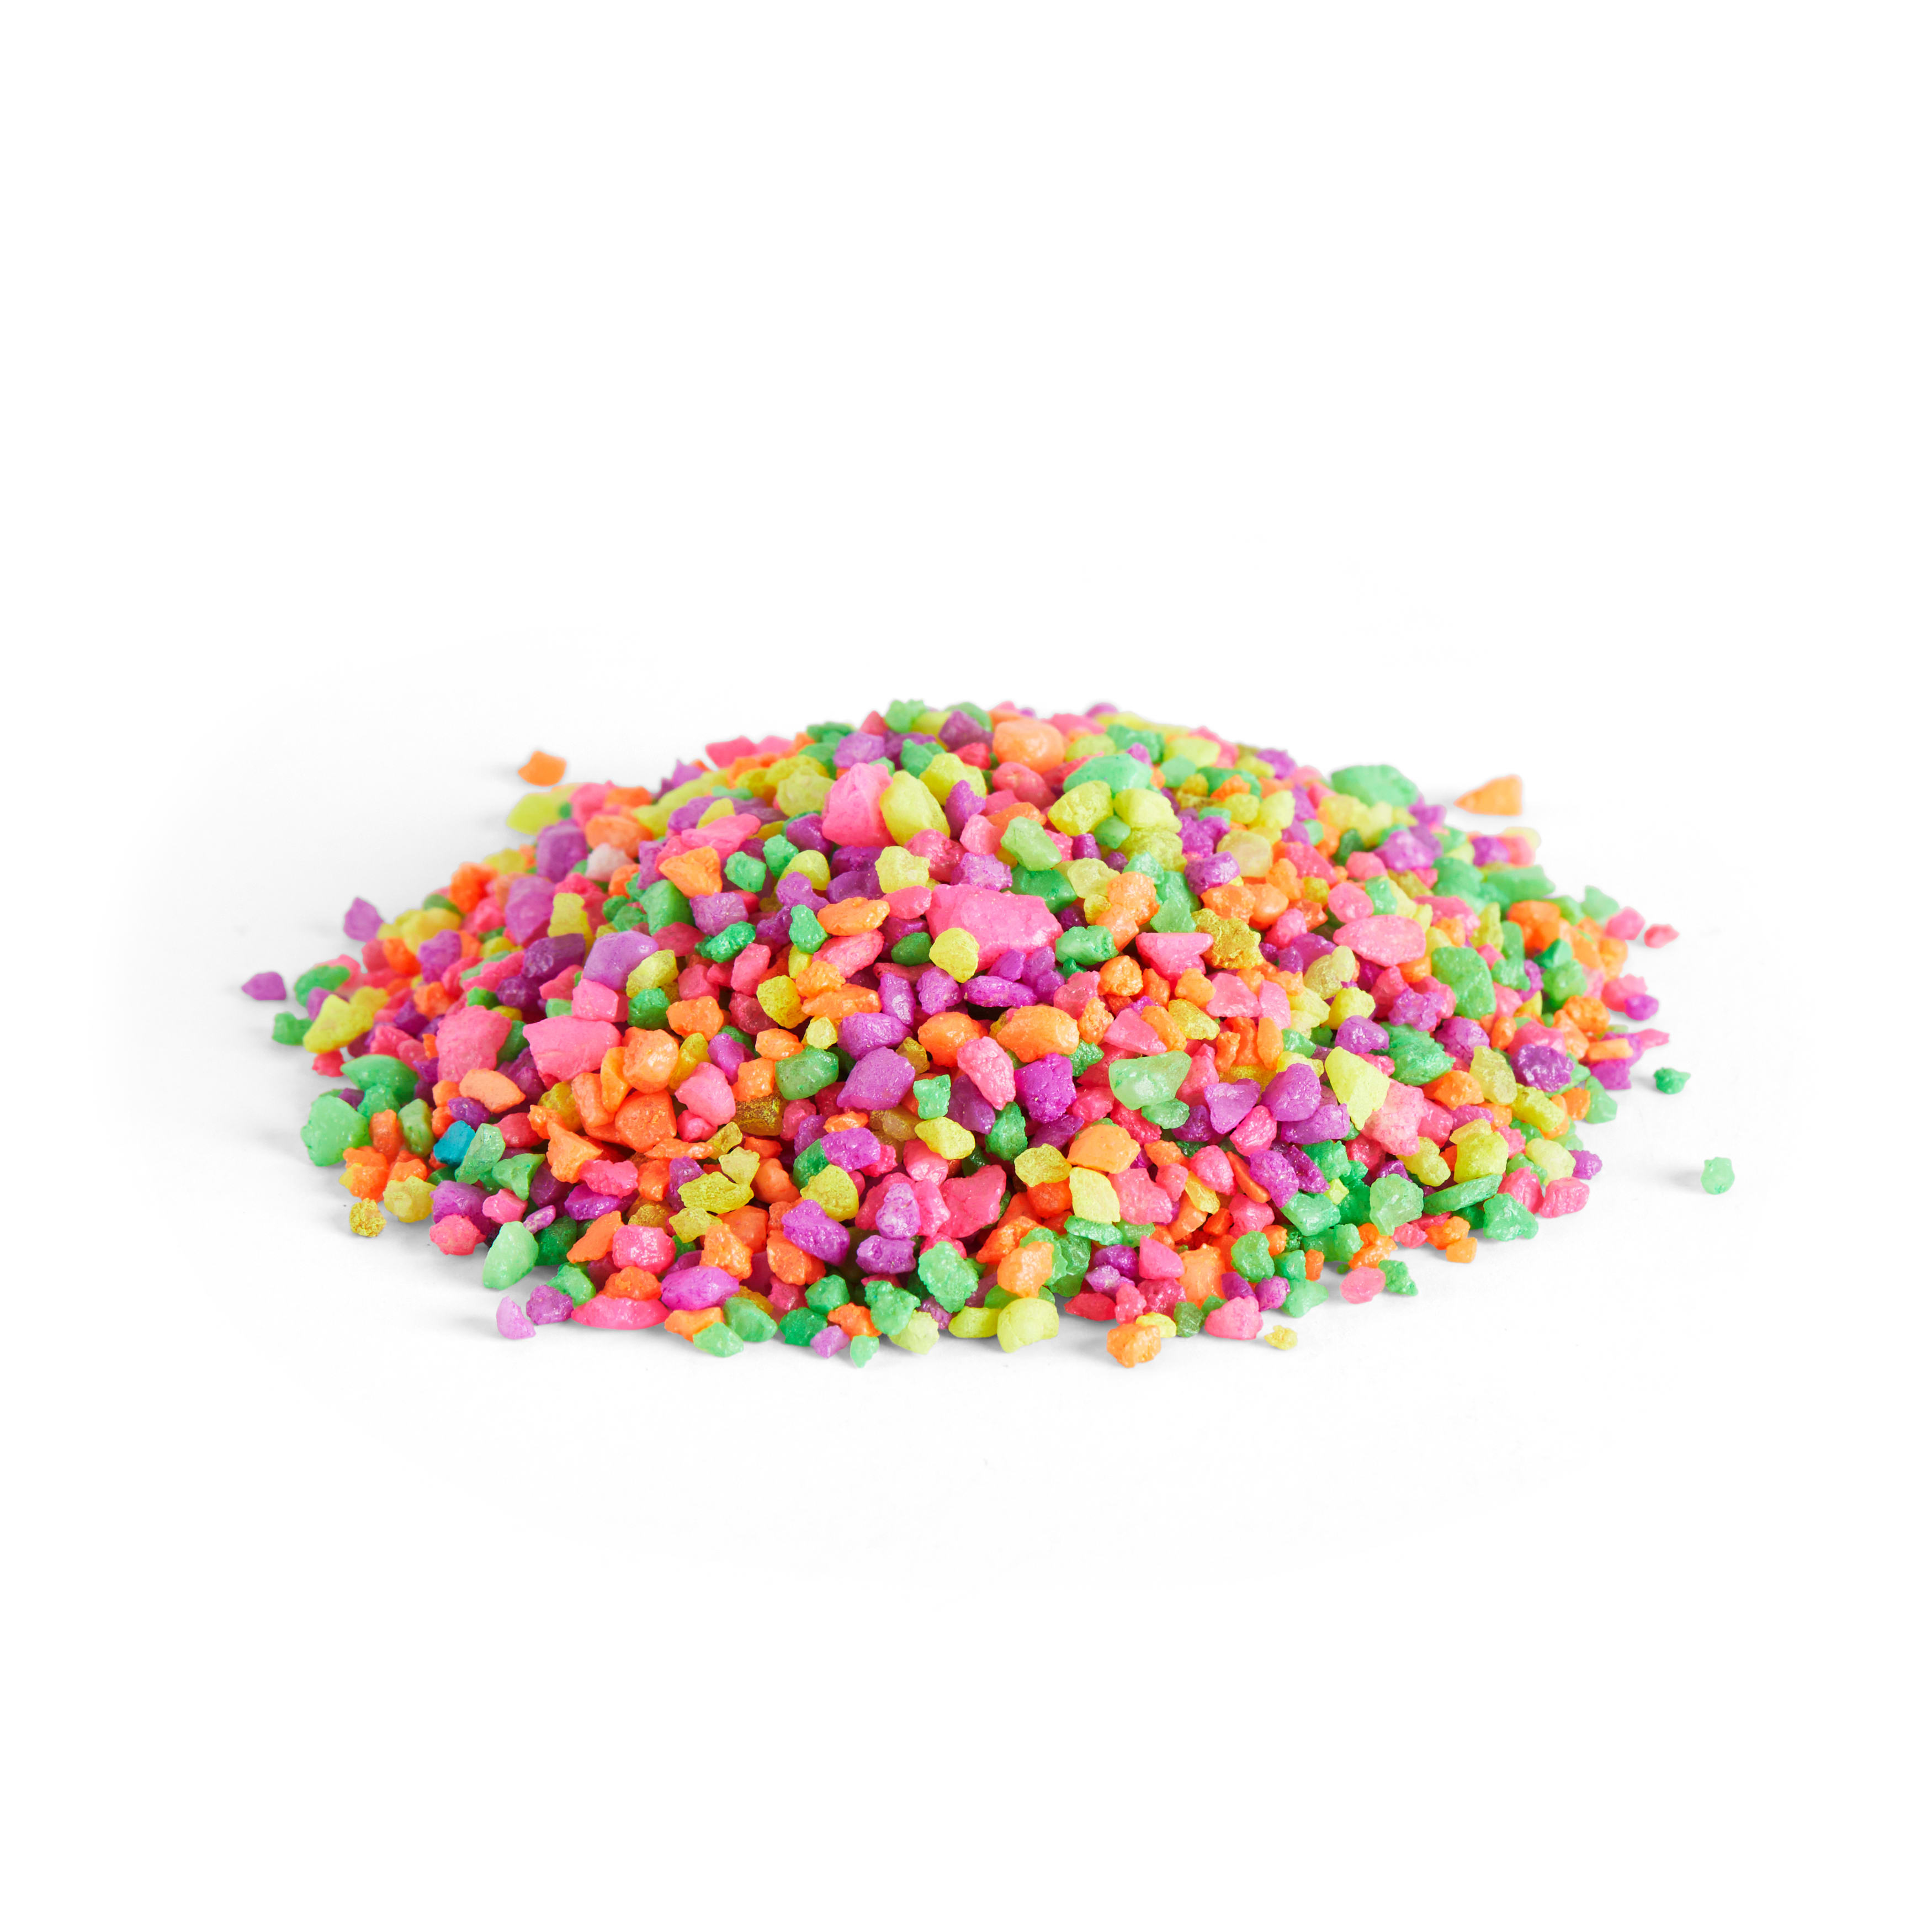 Imagitarium Rainbow Confetti Aquatic Gravel, 2 lbs.